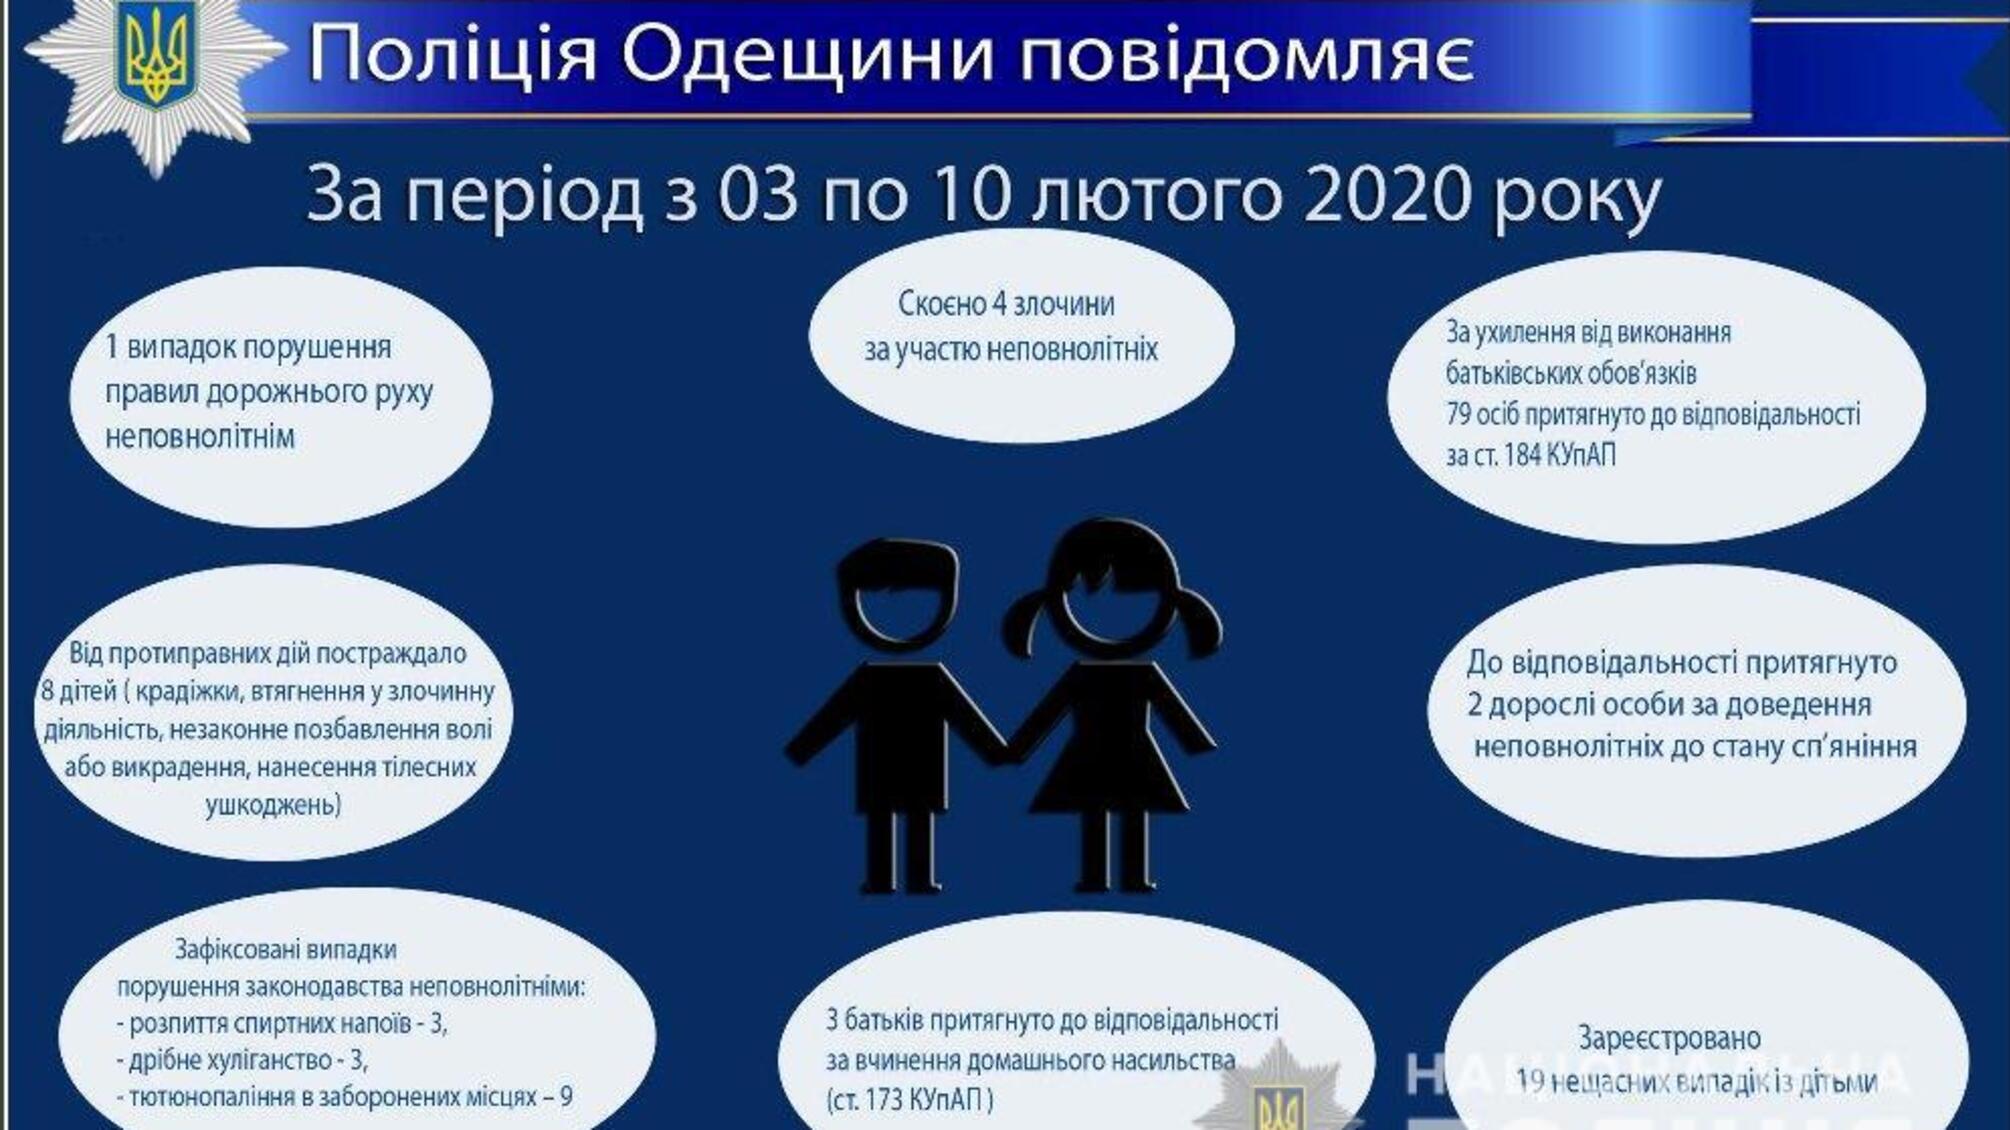 Про стан роботи поліції Одещини з протидії порушенням законодавства неповнолітніми та відносно них за період з 03 по 10 лютого 2020 року